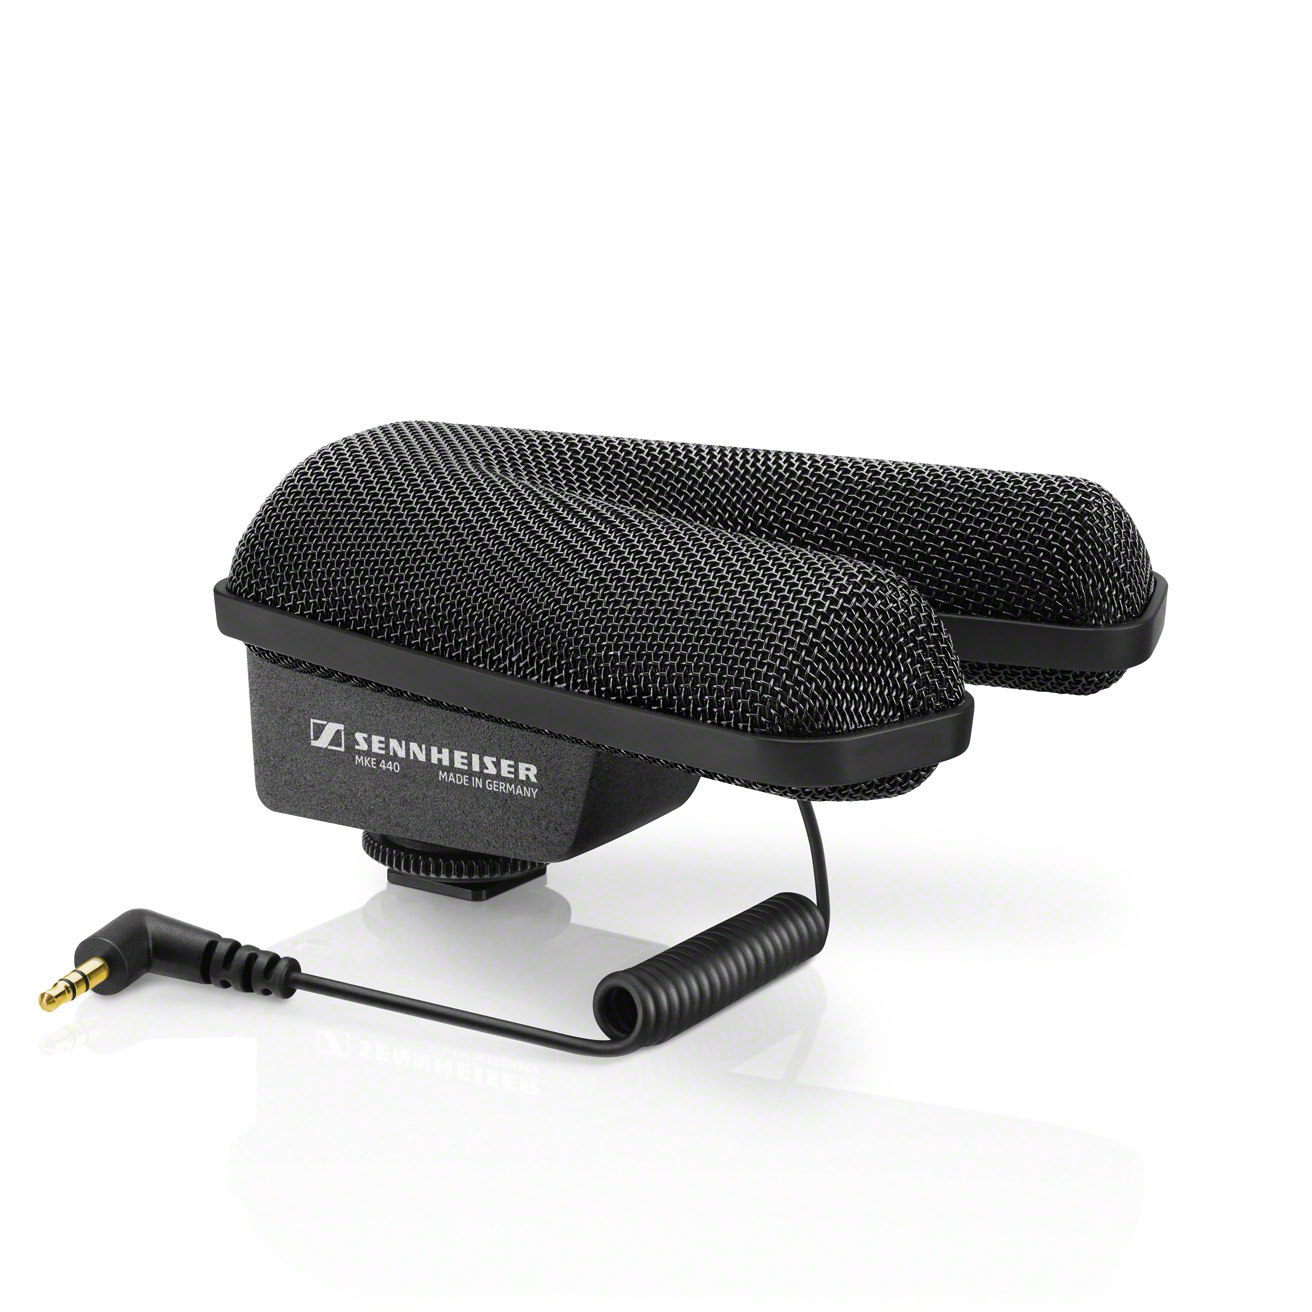 Sennheiser MKE 440, microphone pour caméra, microphone stéréo, audio pro